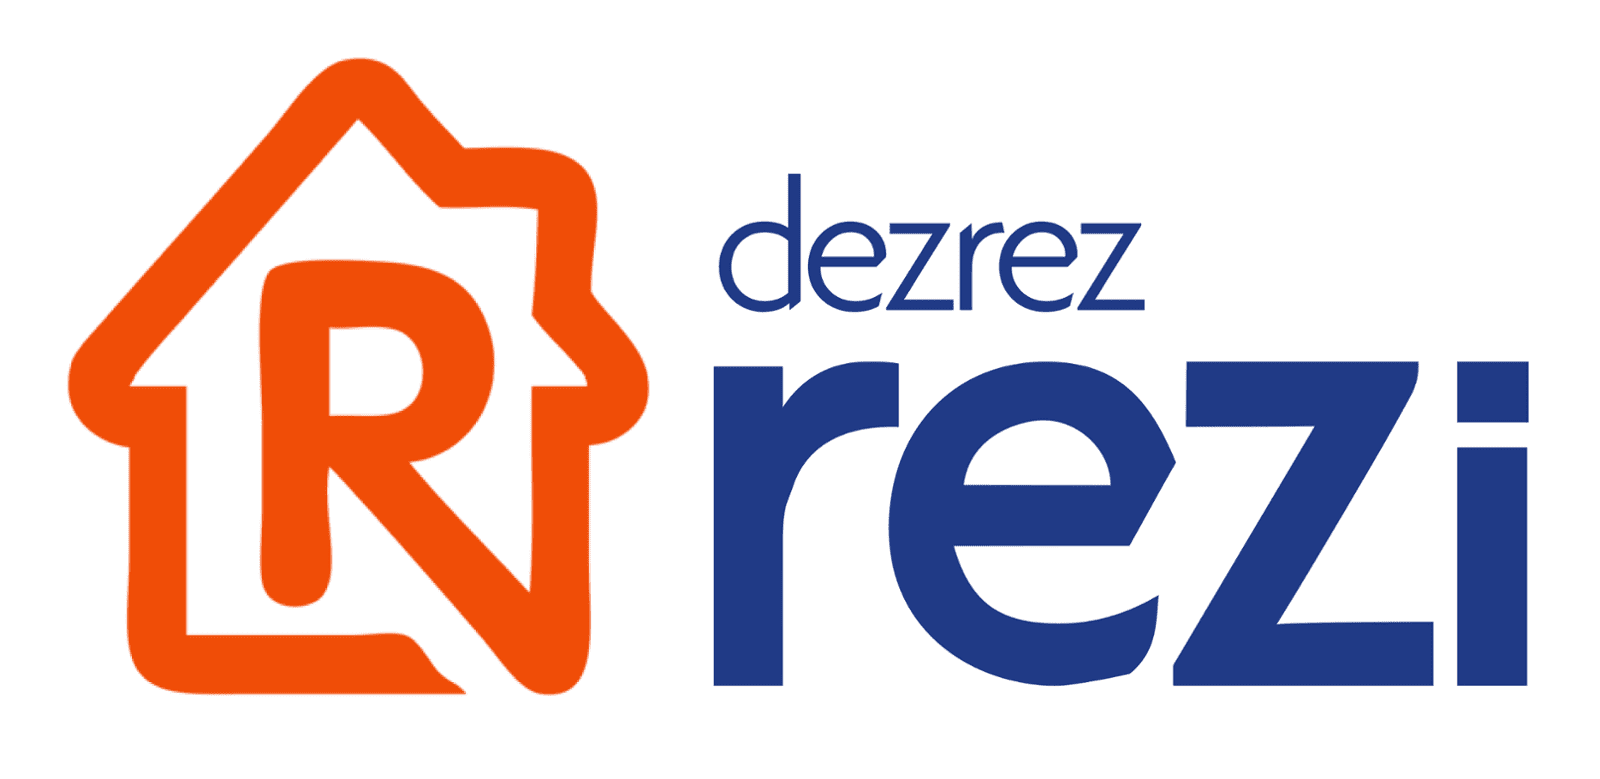 Rezi Logo